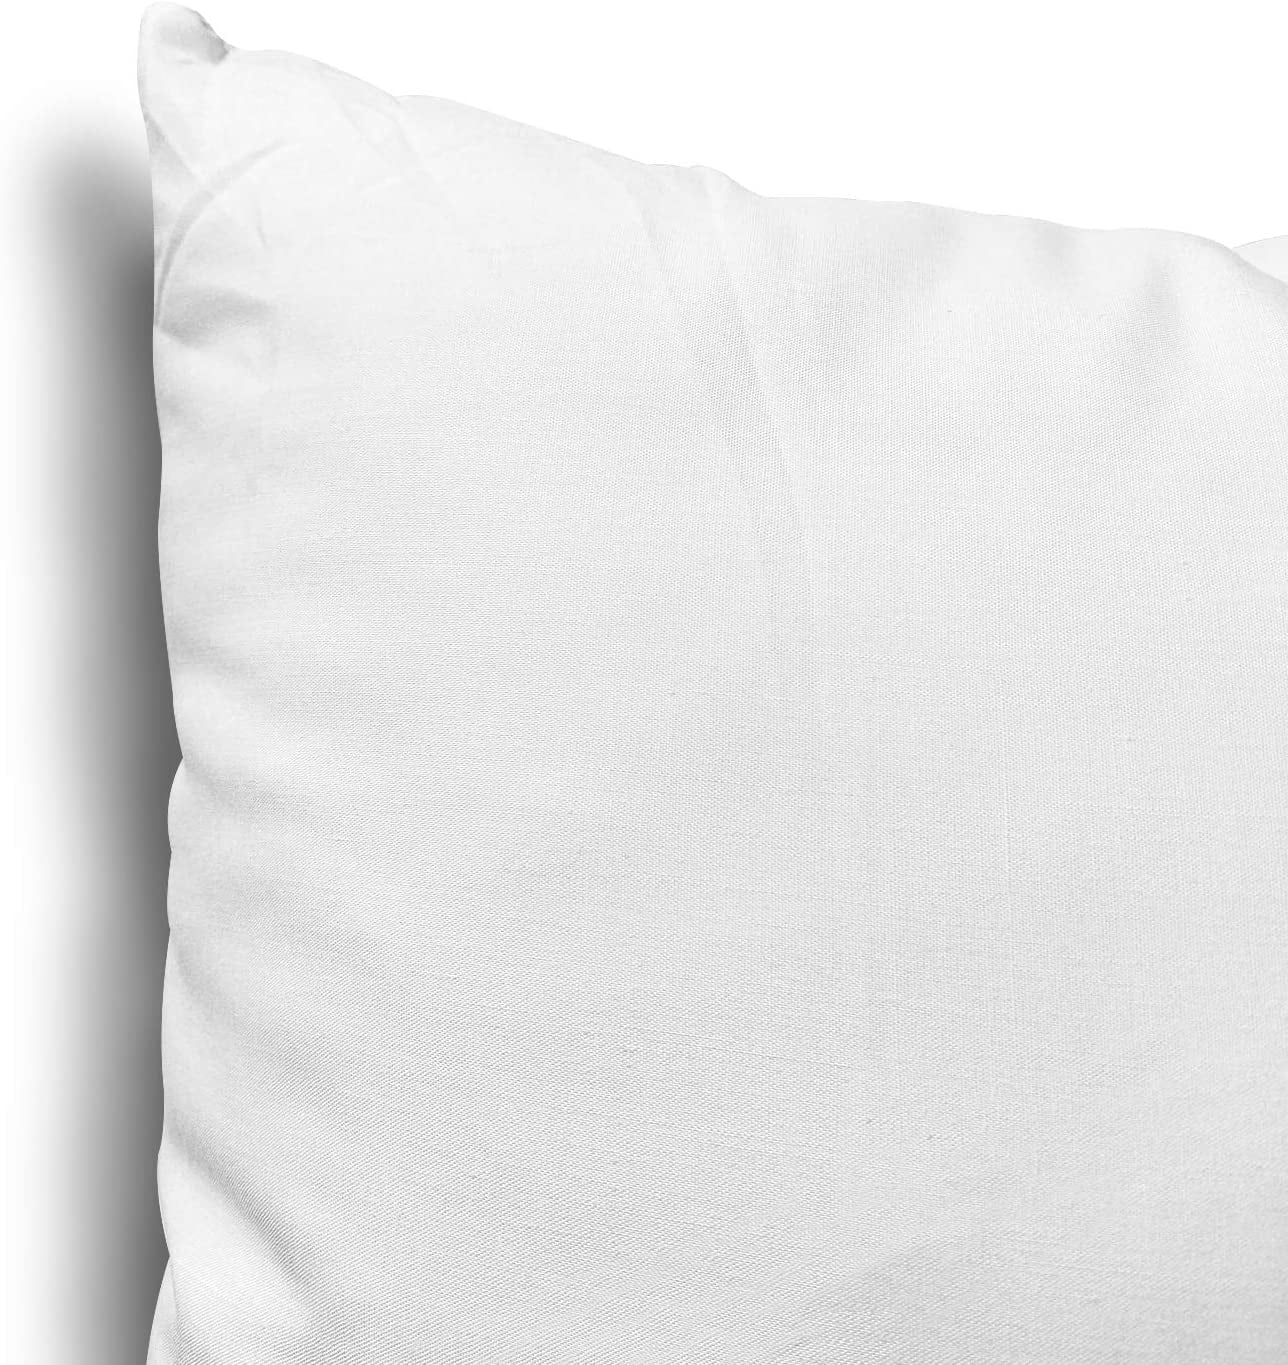 Edow Throw Pillow Inserts White 18x18 New Sealed